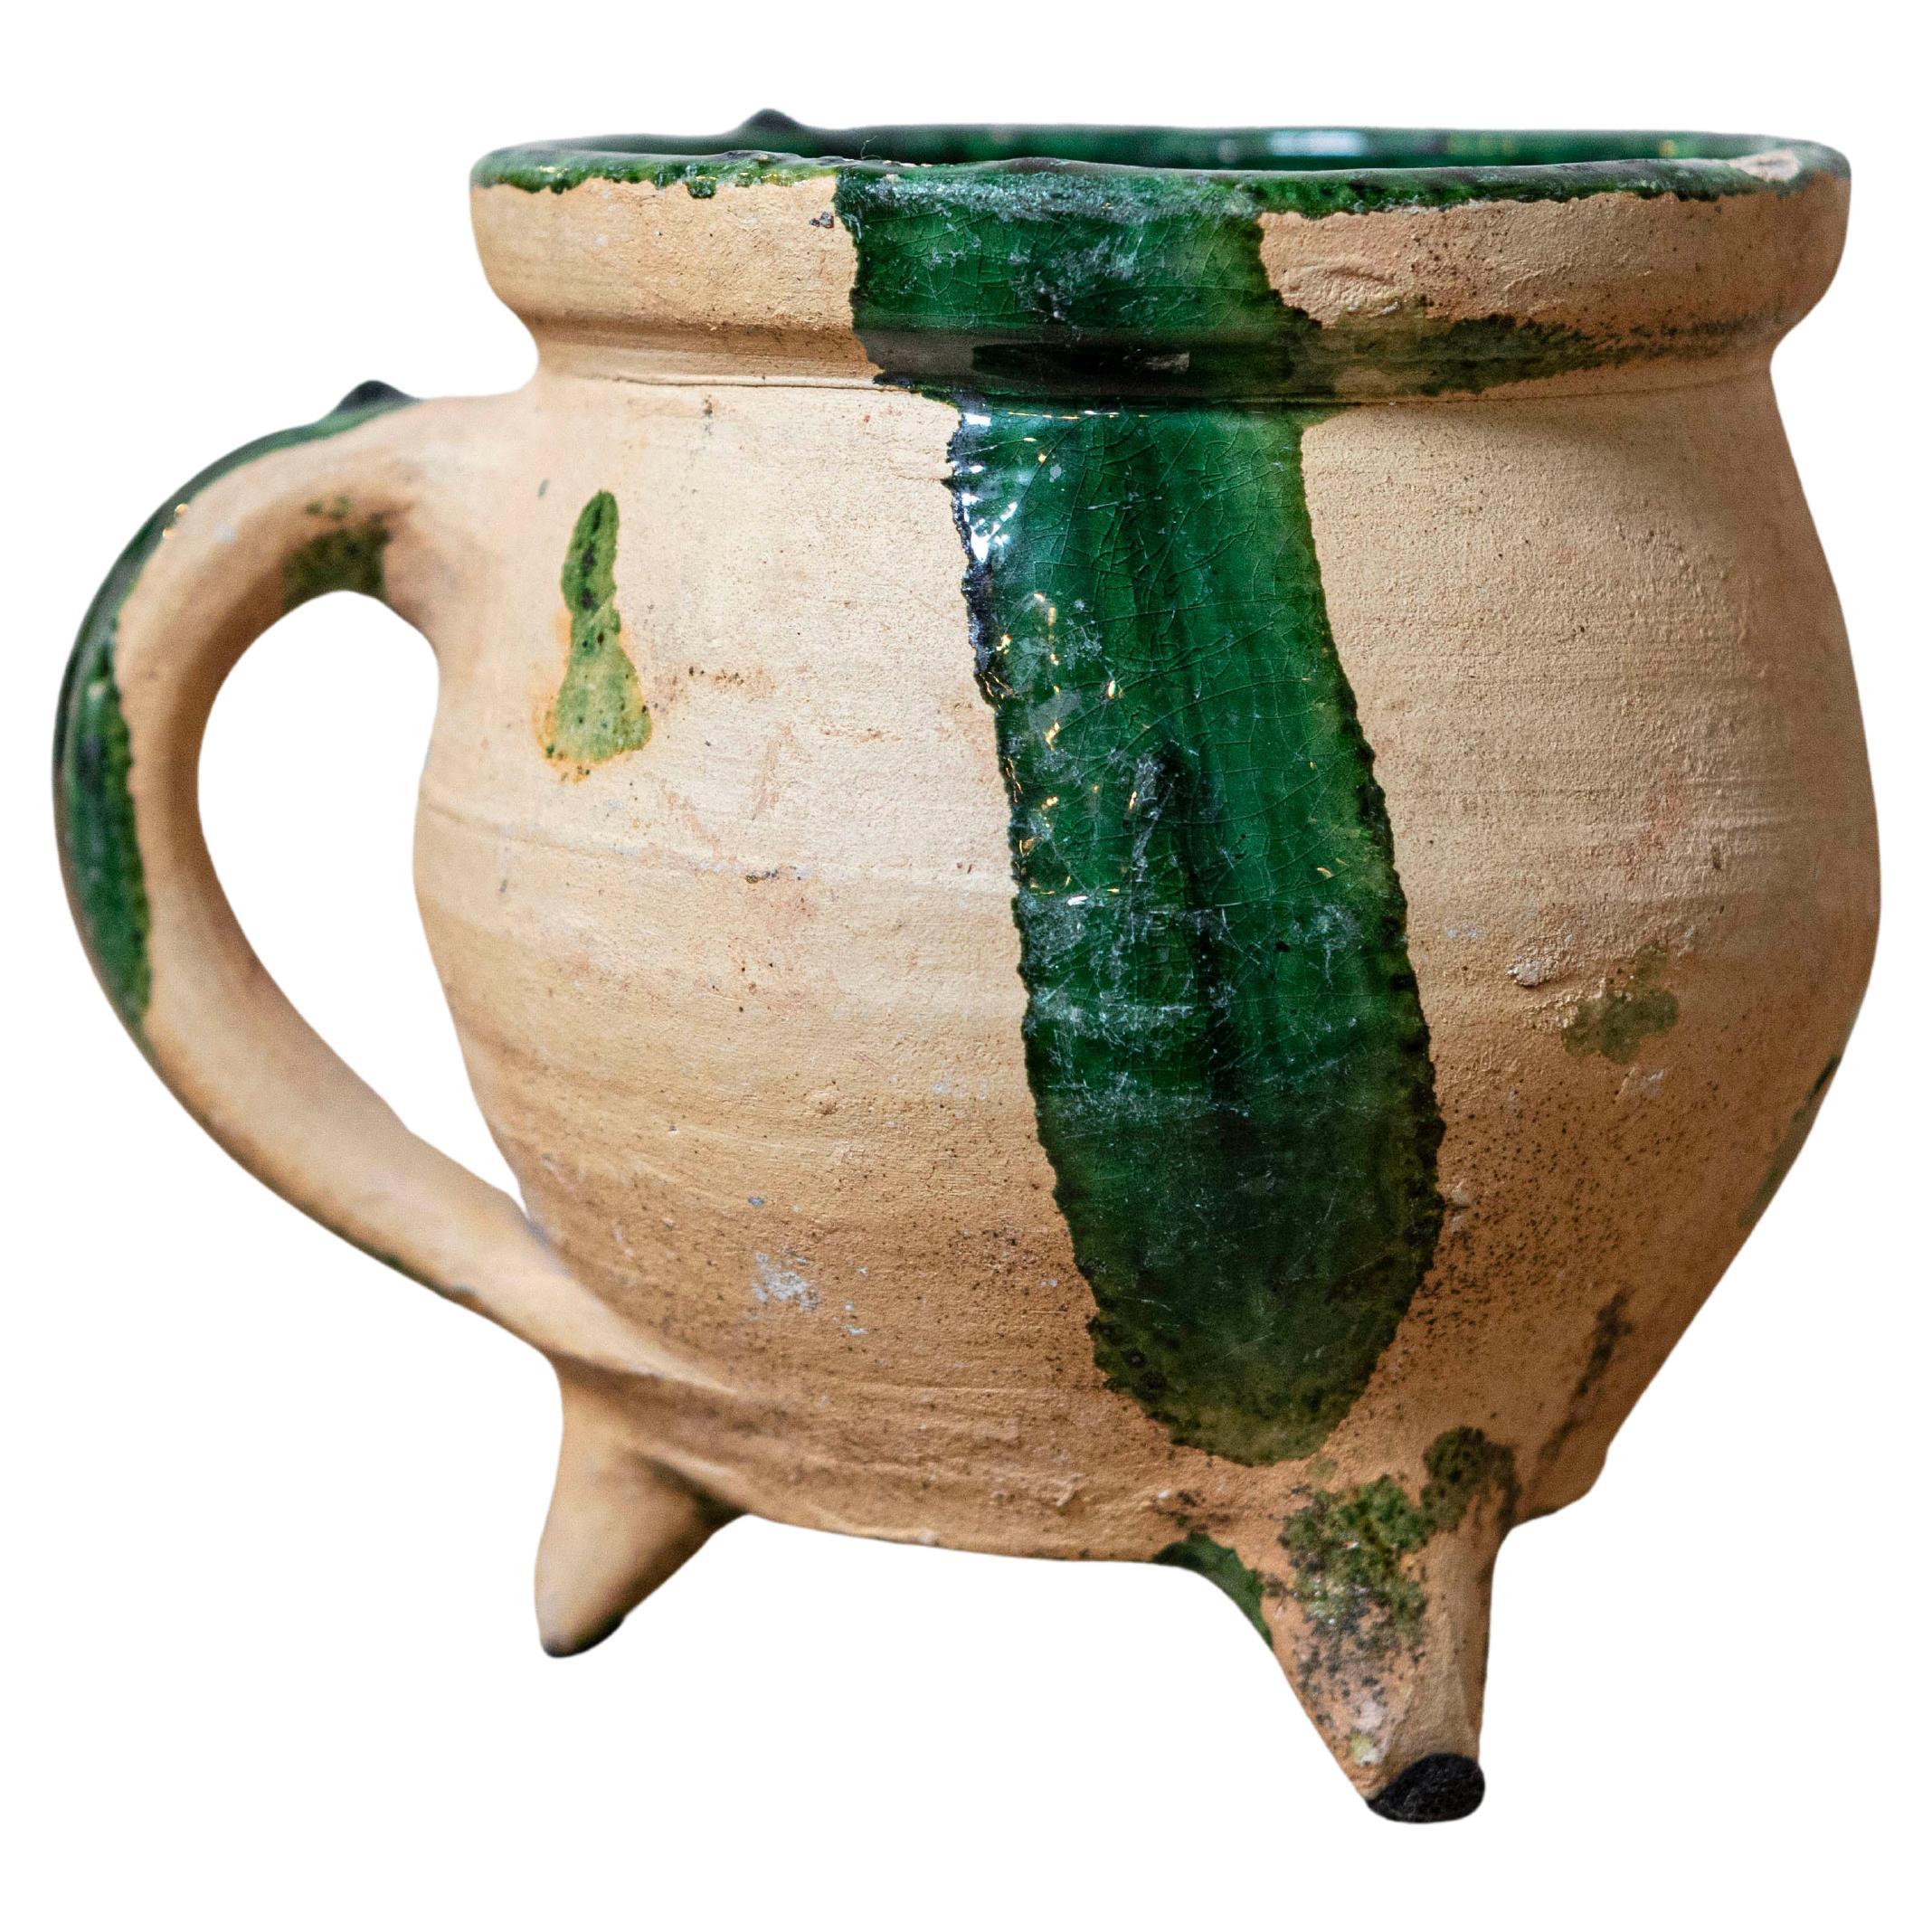 Pot à cuisine provincial français du 19ème siècle en poterie avec glaçure verte partielle